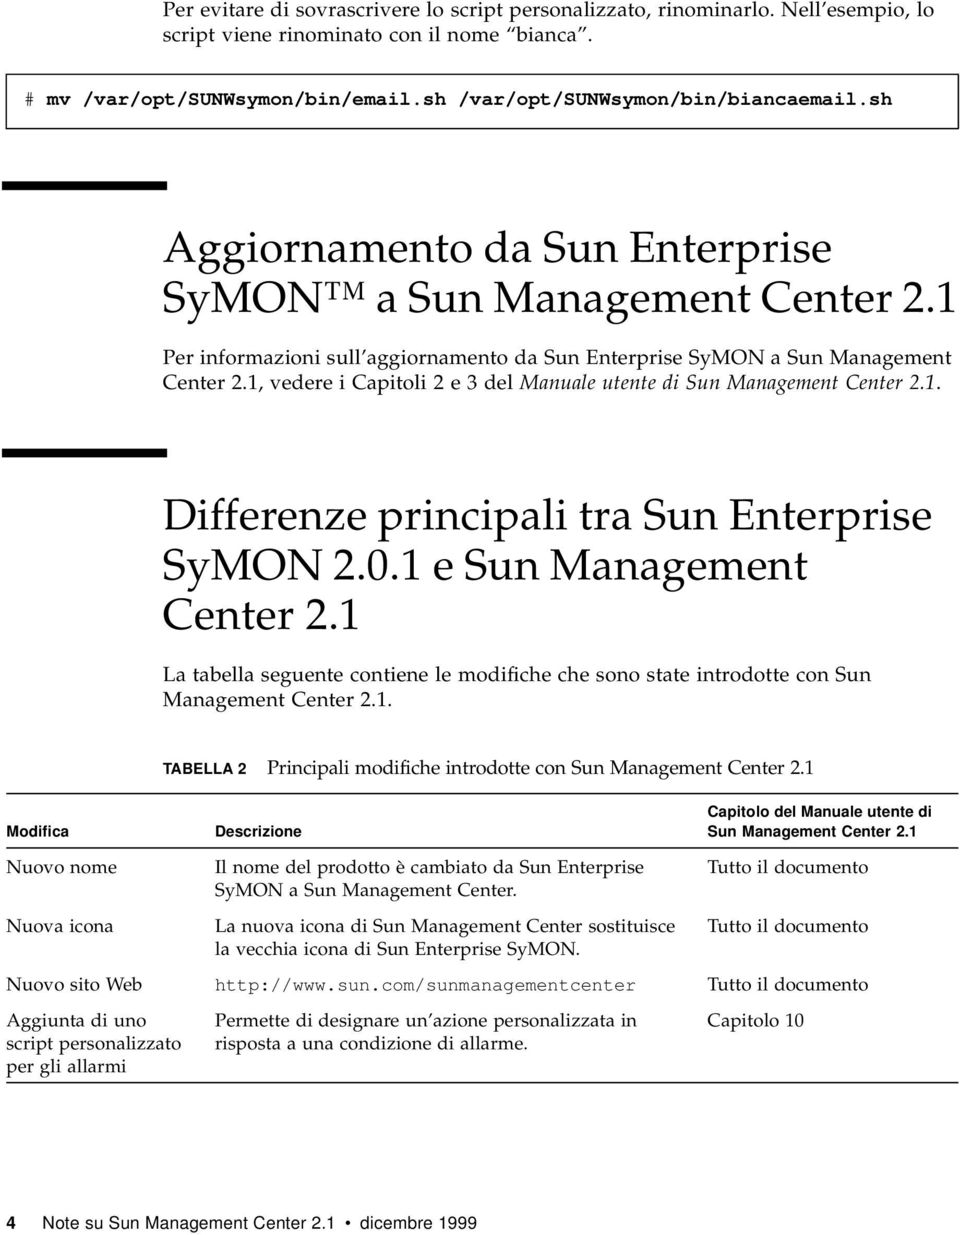 1, vedere i Capitoli 2e3delManuale utente di Sun Management Center 2.1. Differenze principali tra Sun Enterprise SyMON 2.0.1 e Sun Management Center 2.